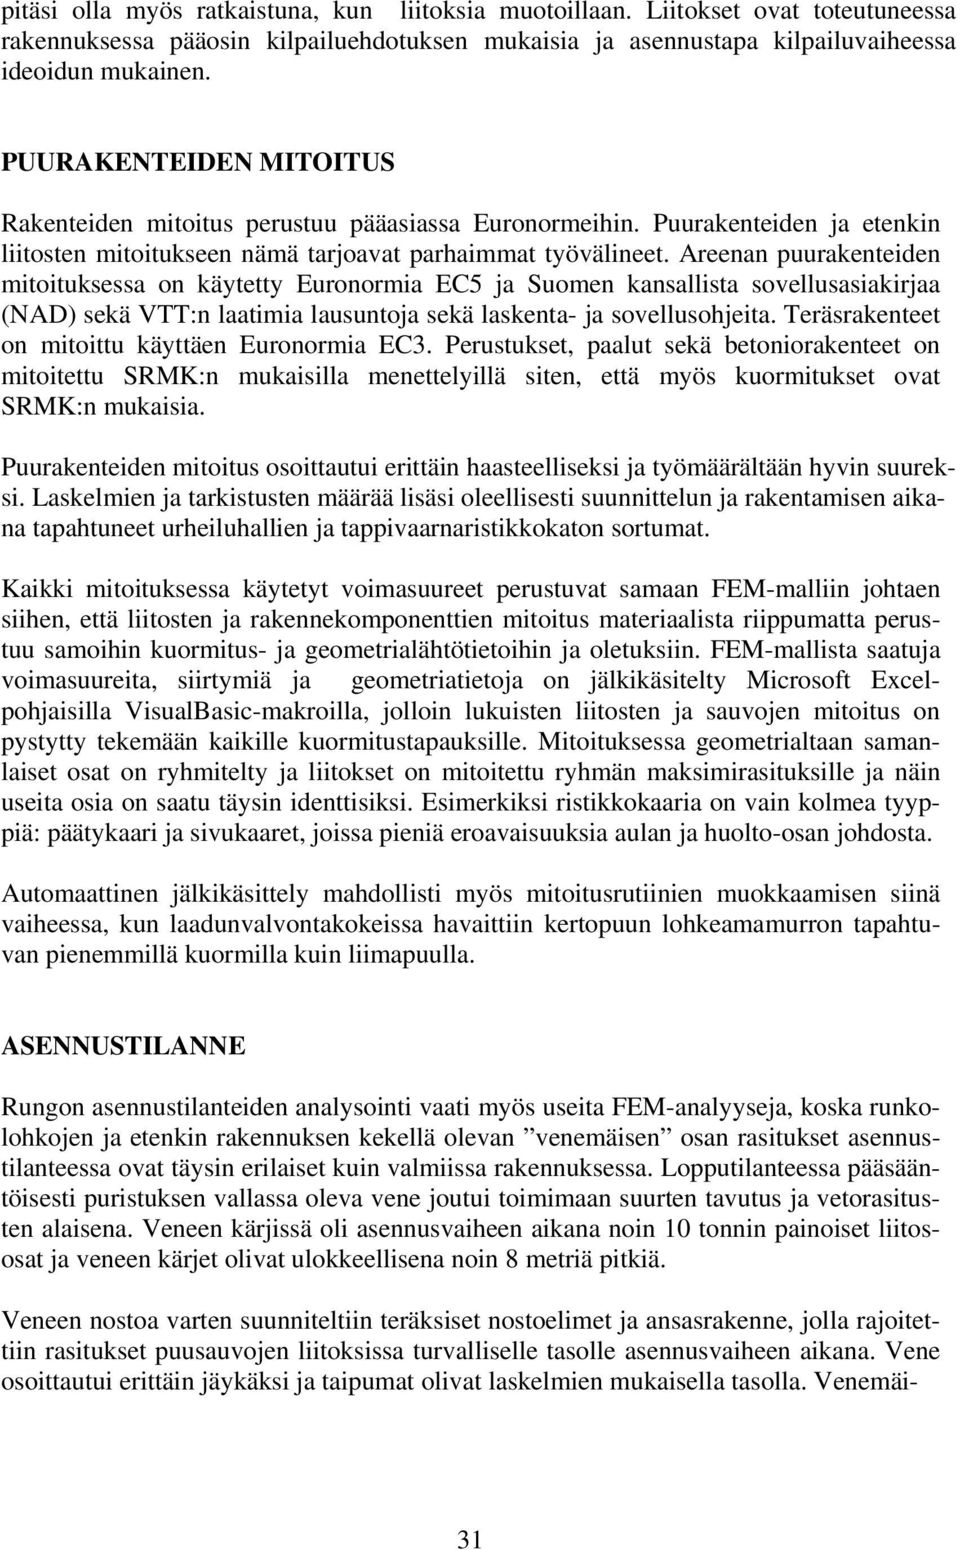 Areenan puurakenteiden mitoituksessa on käytetty Euronormia EC5 ja Suomen kansallista sovellusasiakirjaa (NAD) sekä VTT:n laatimia lausuntoja sekä laskenta- ja sovellusohjeita.